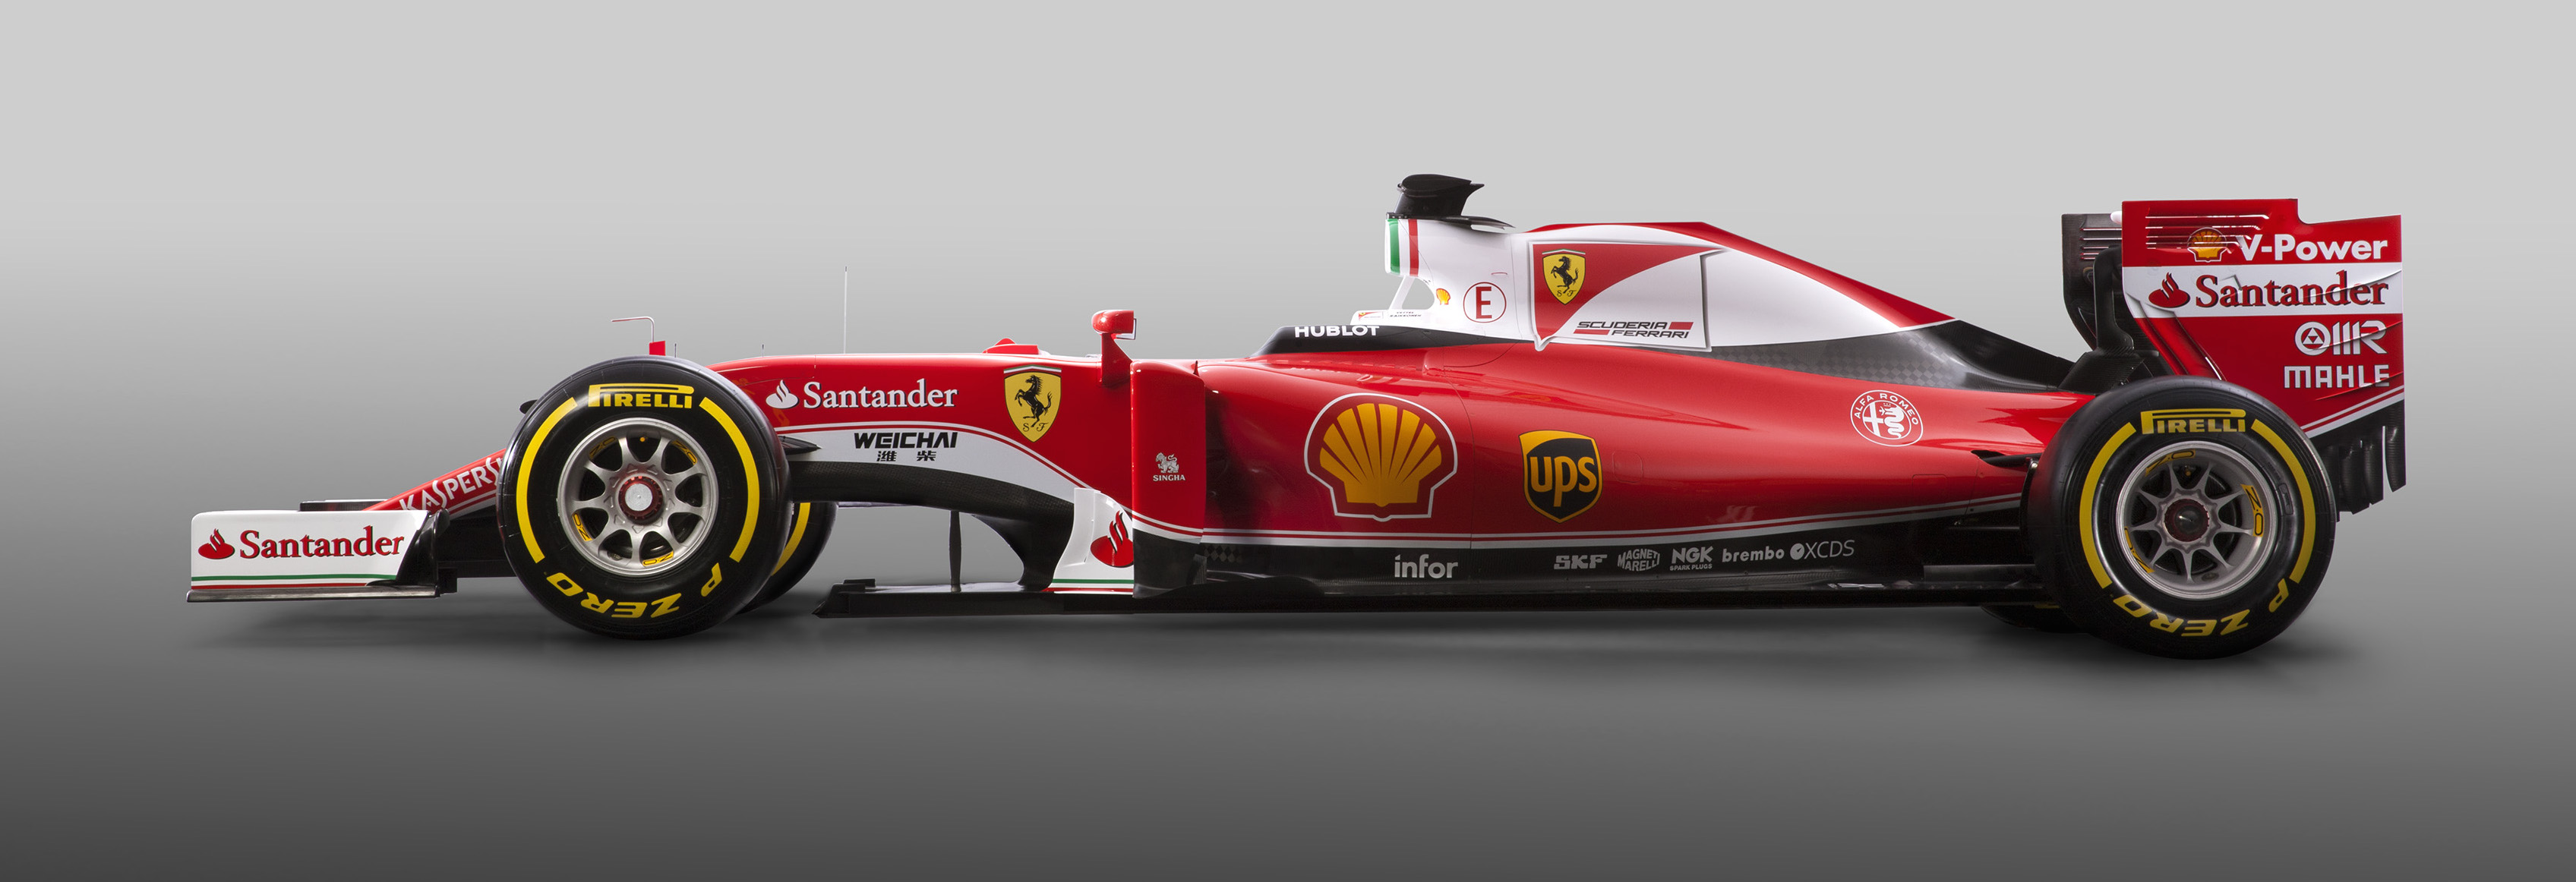 Embryo Glad huid Ferrari en Williams presenteren nieuwe Formule 1-auto